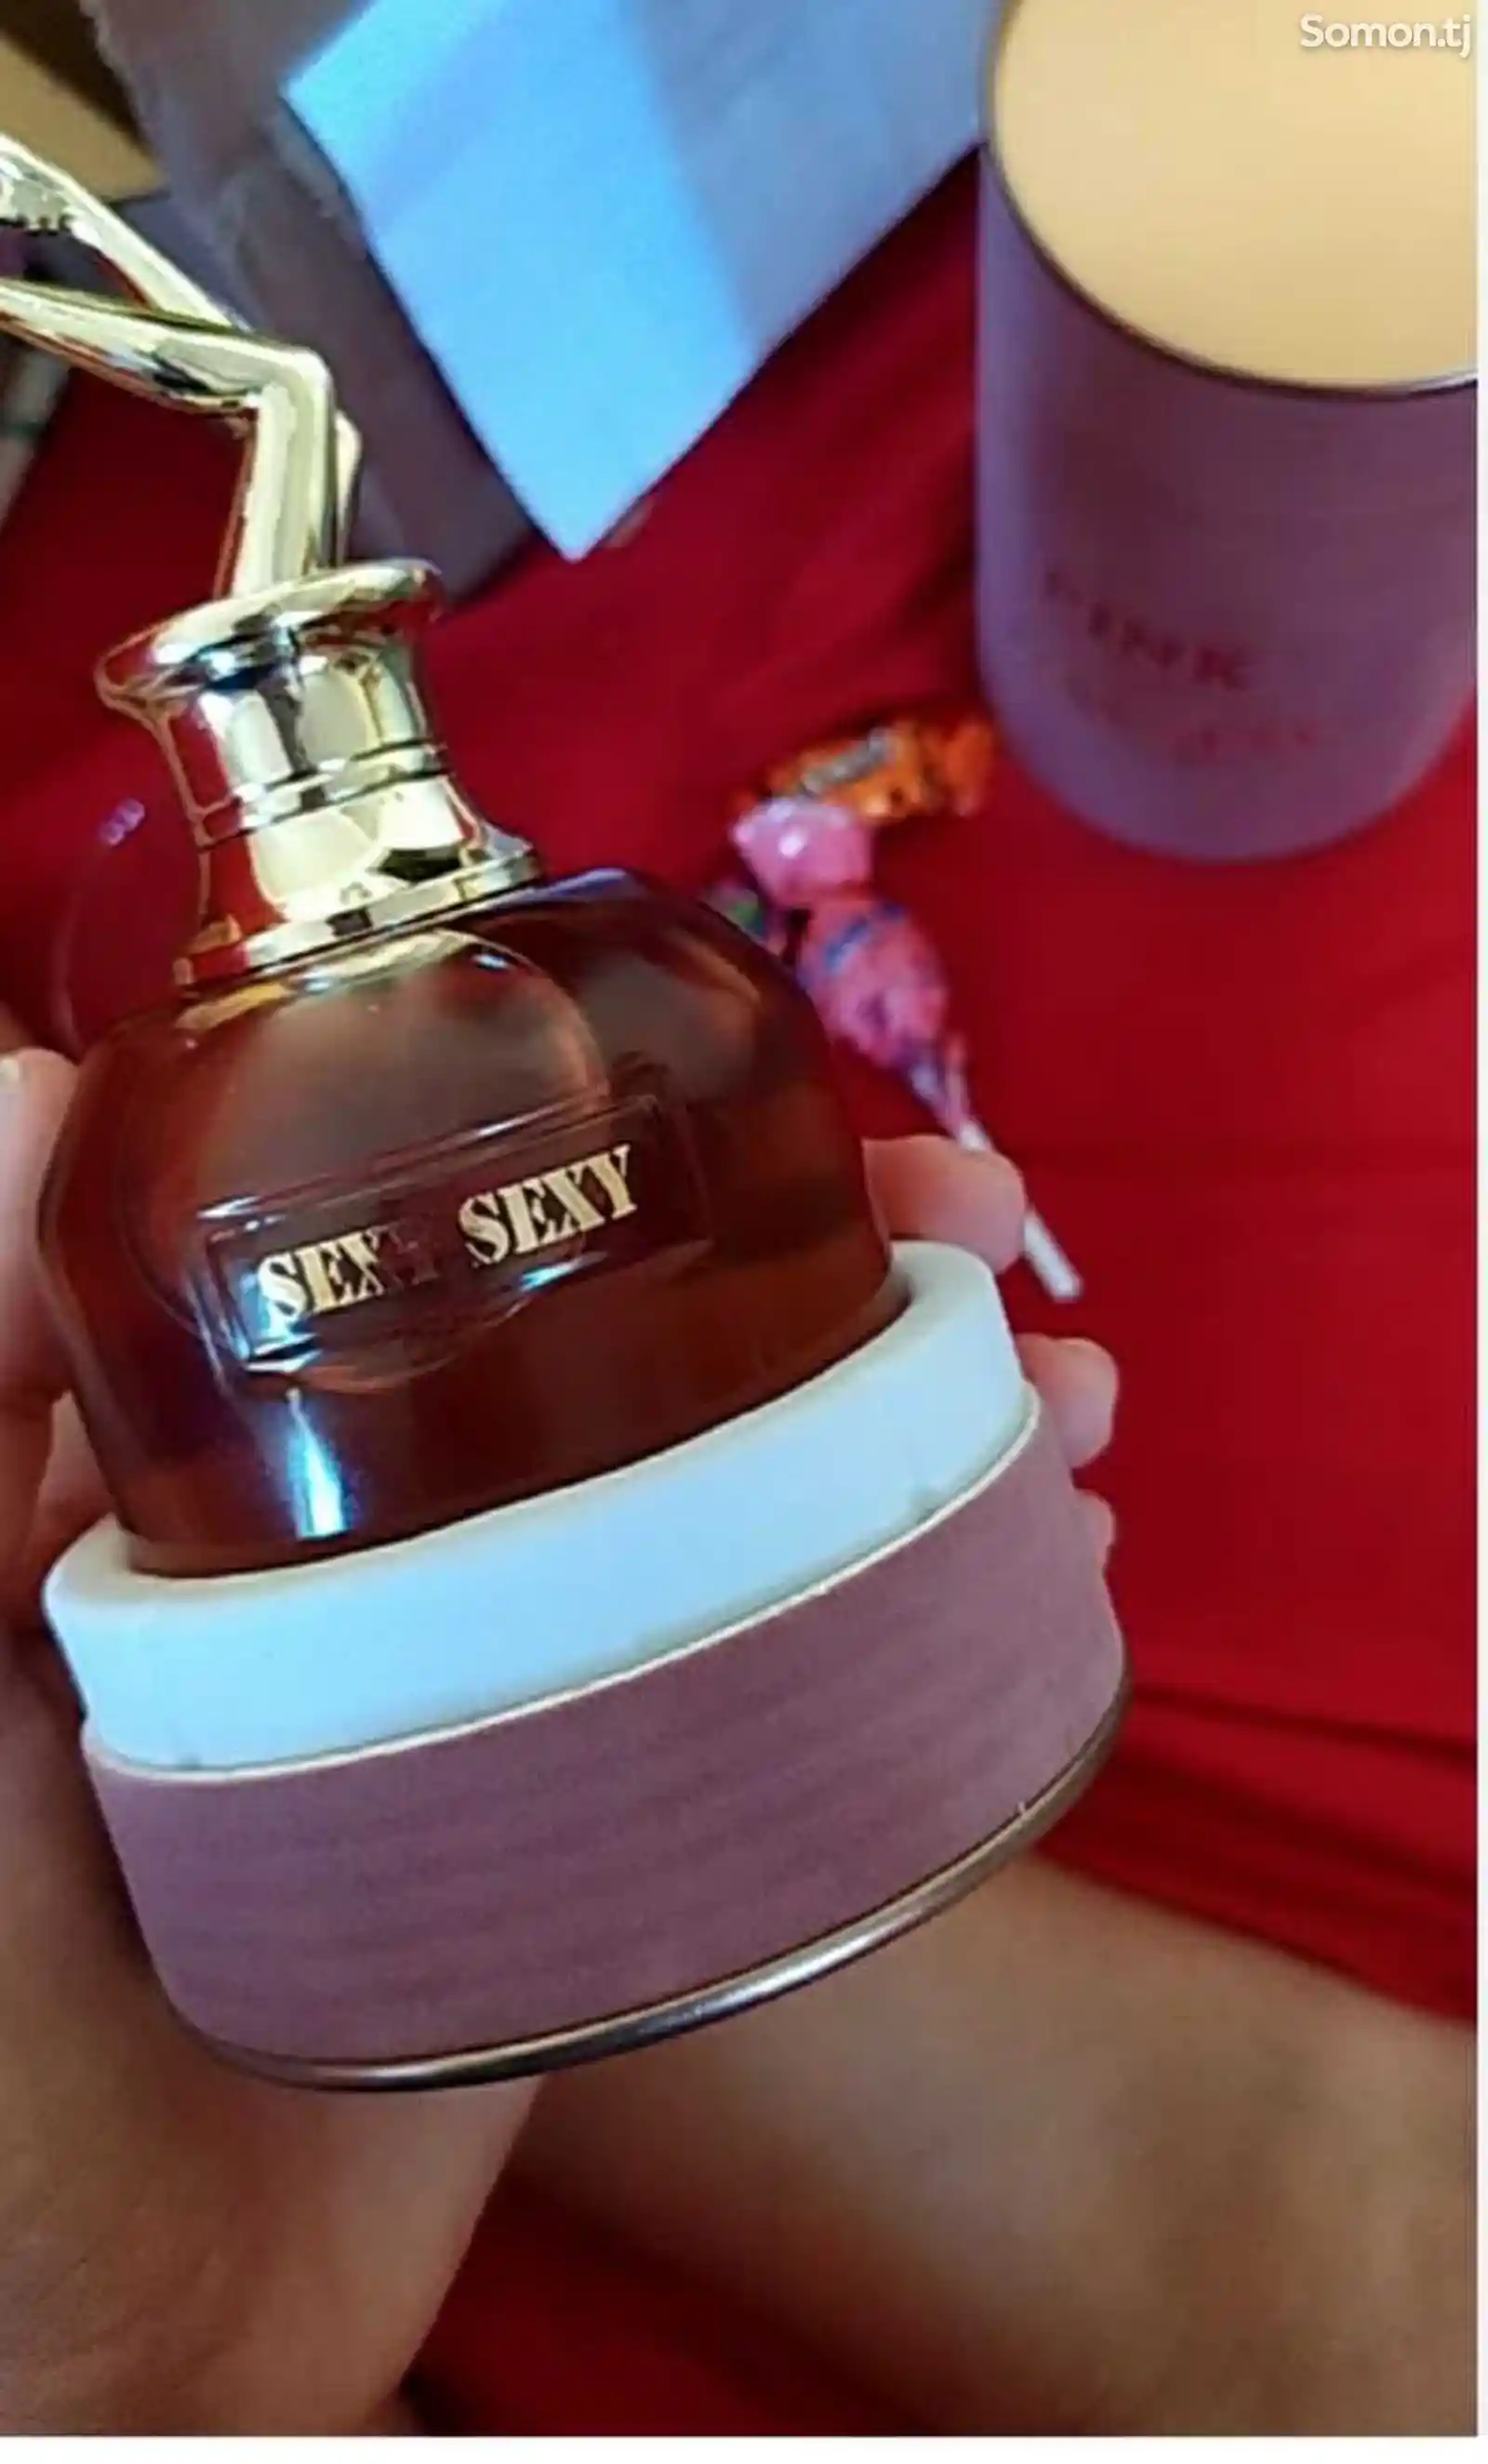 Женский парфюм Girl sexy scandal с феромоном-1